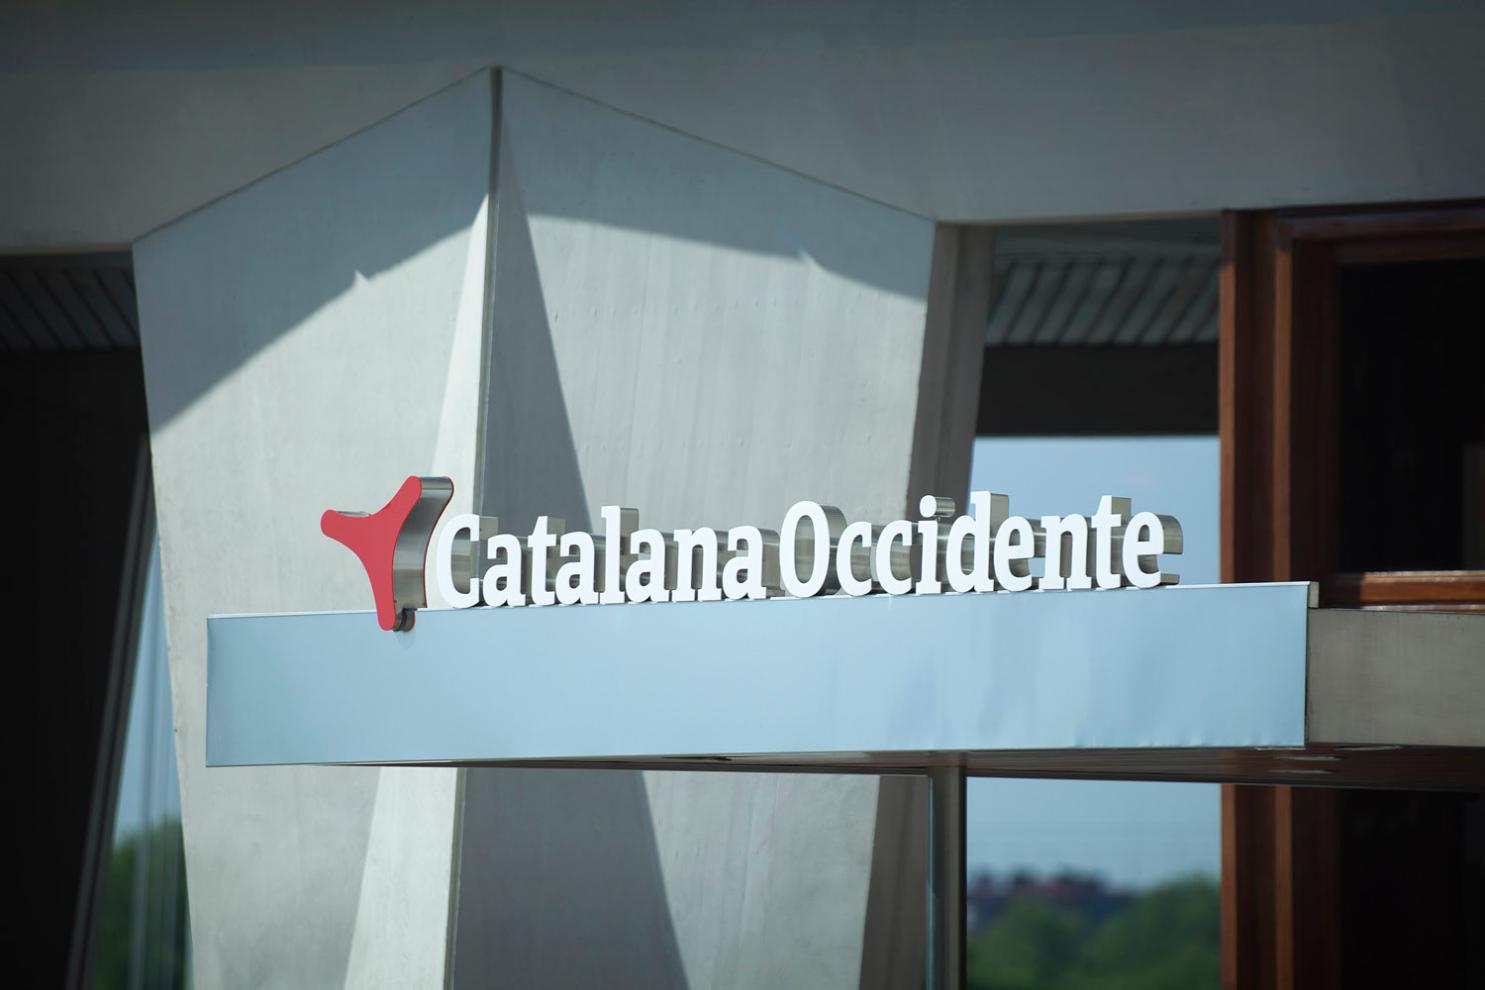 Oficines centrals del Grup Catalana Occident a Sant Cugat del Vallès (Barcelona)